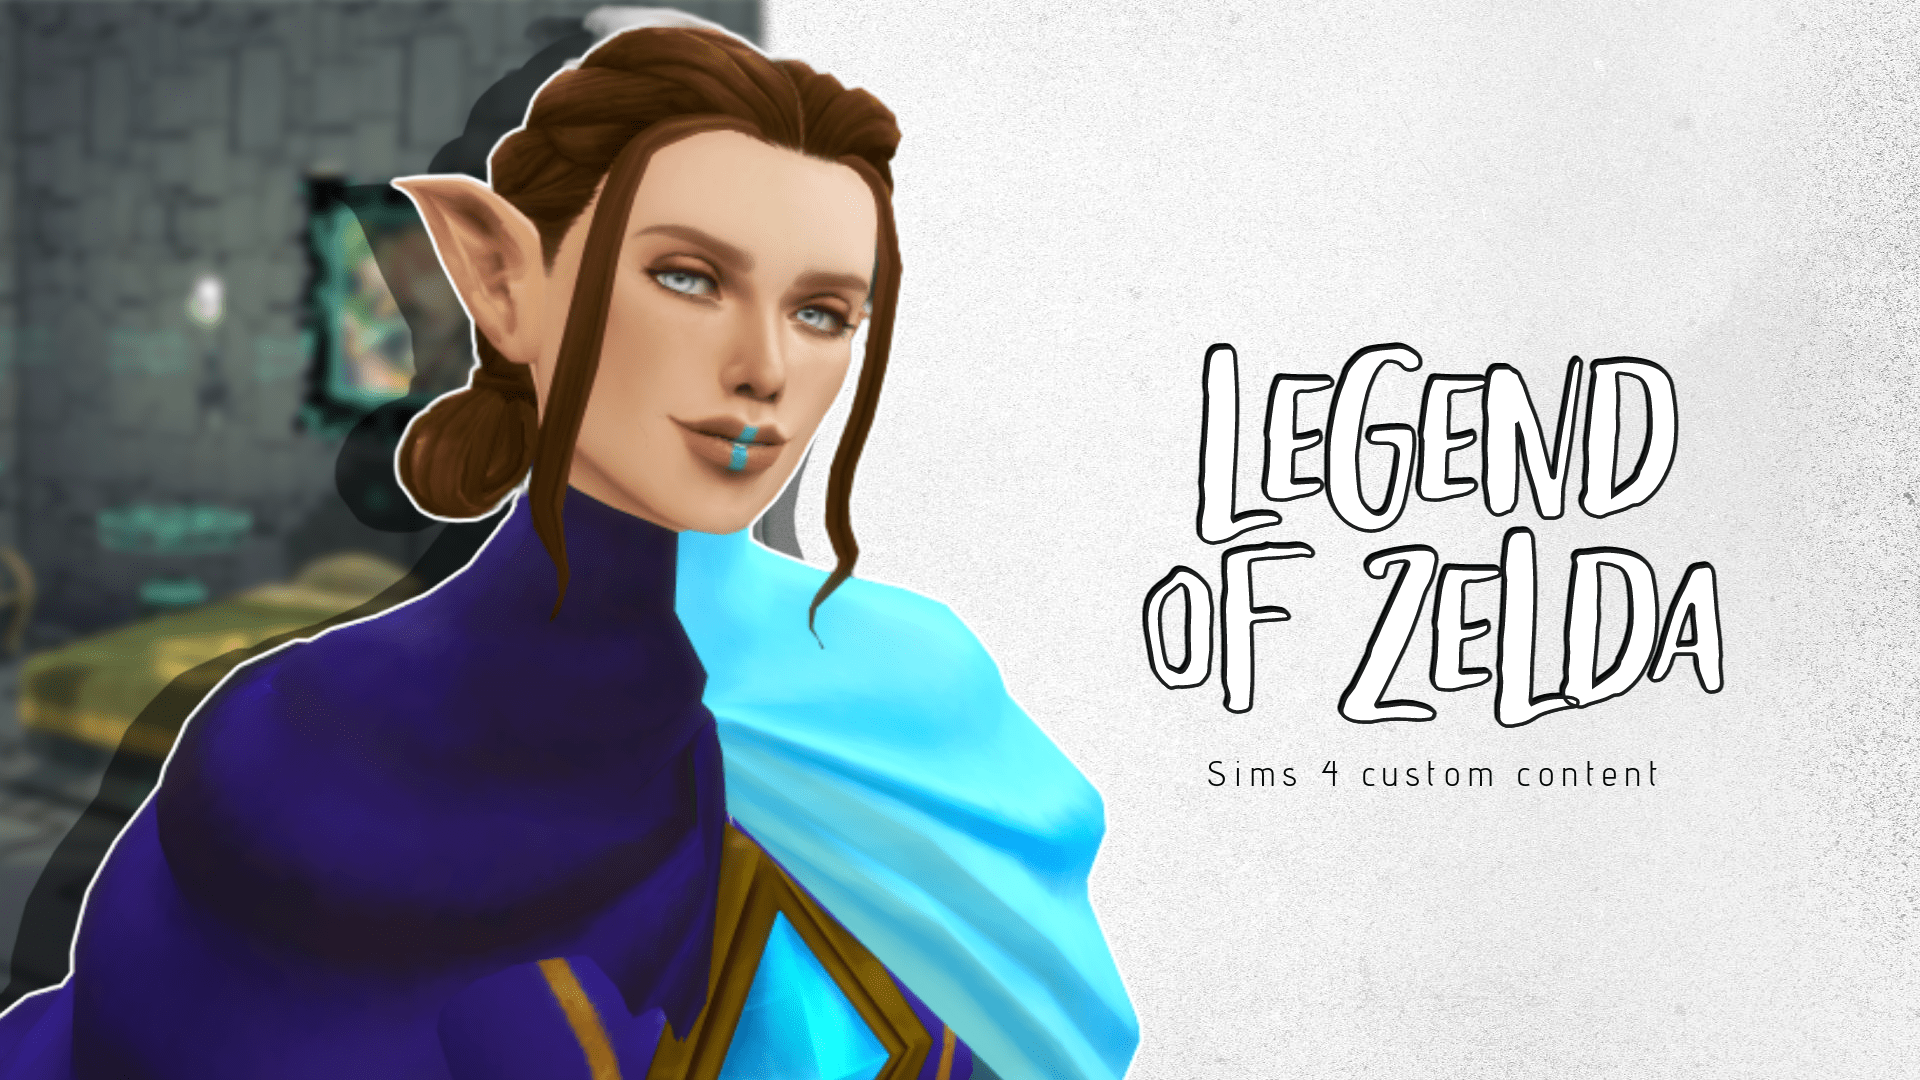 sims 4 legend of zelda custom content